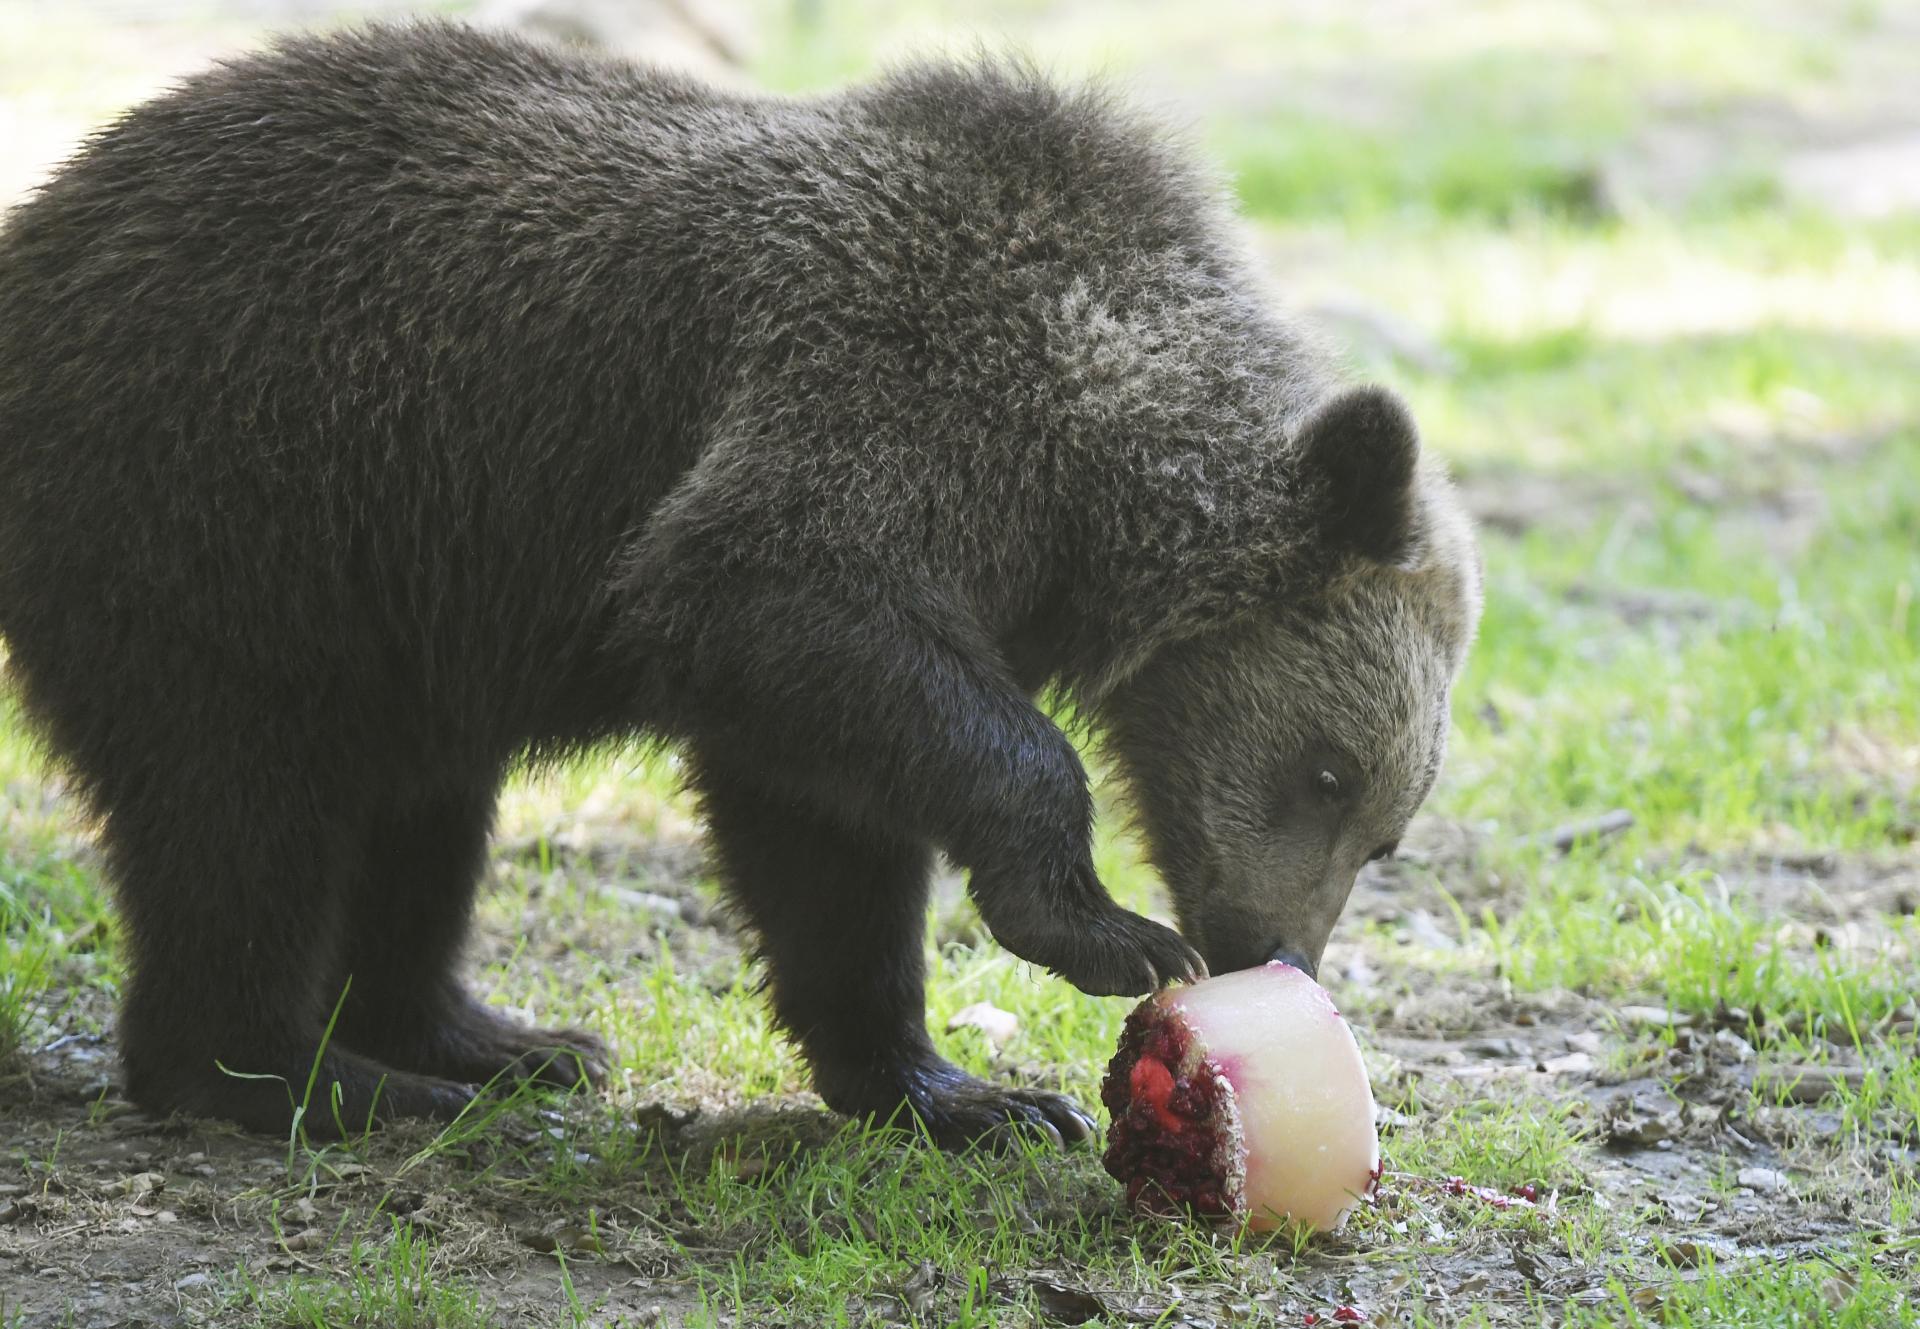 Vláda zatiaľ nevyužila jednoduchšie pravidlá na likvidáciu problémových medveďov